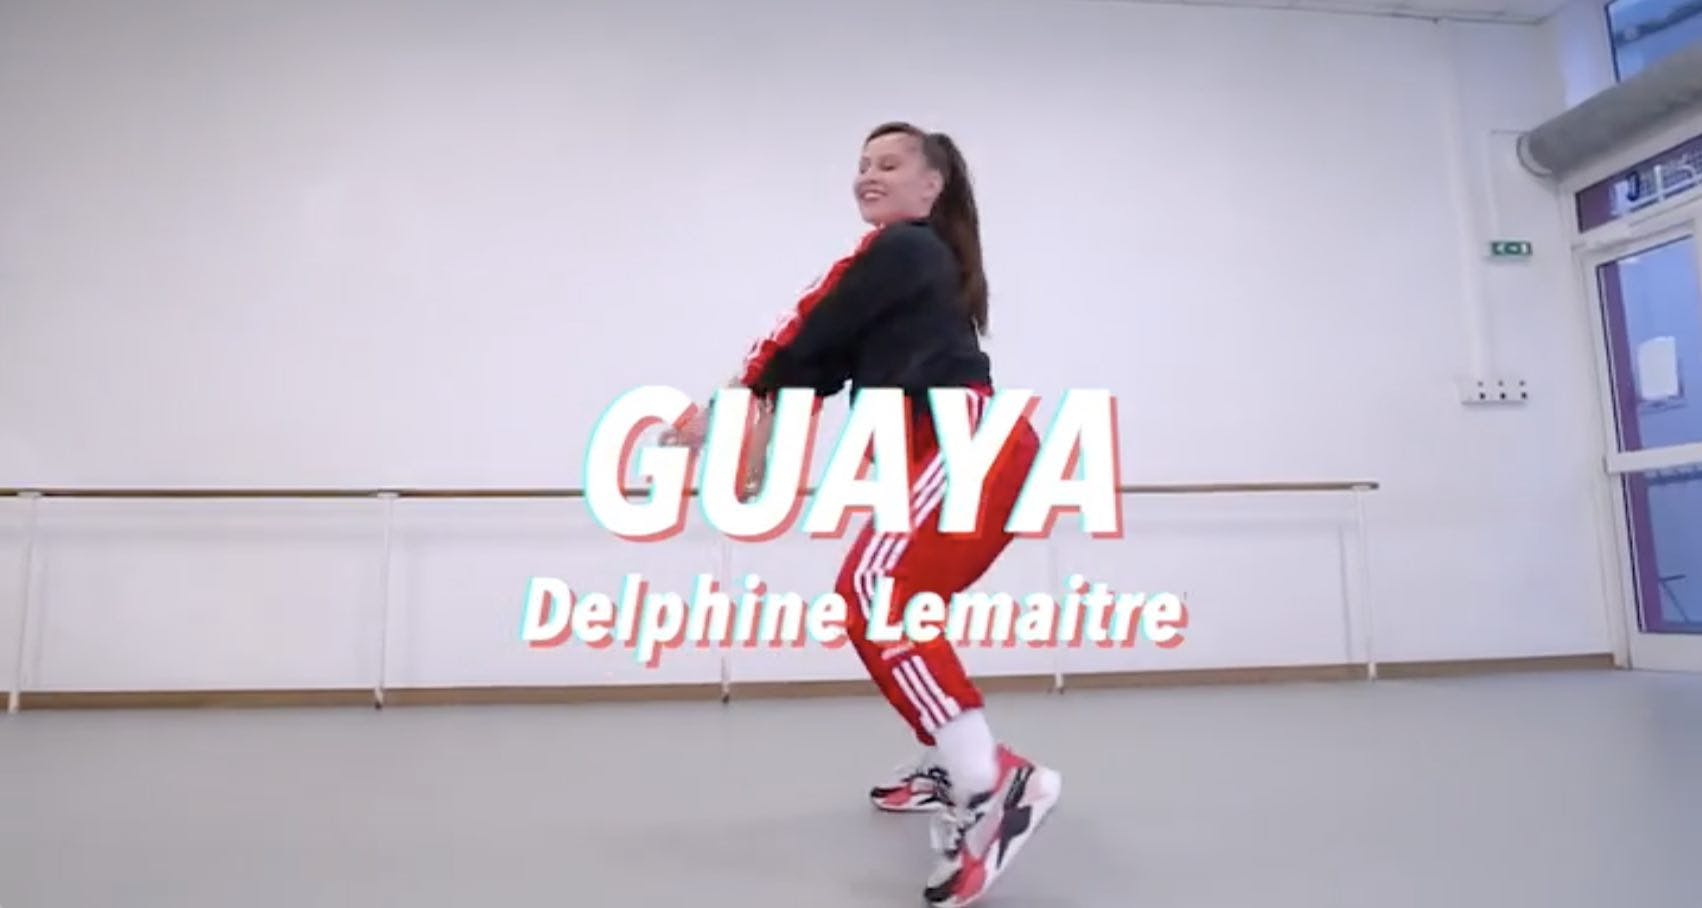 Cours de danse Guaya - Eva Simons de Delphine Lemaitre